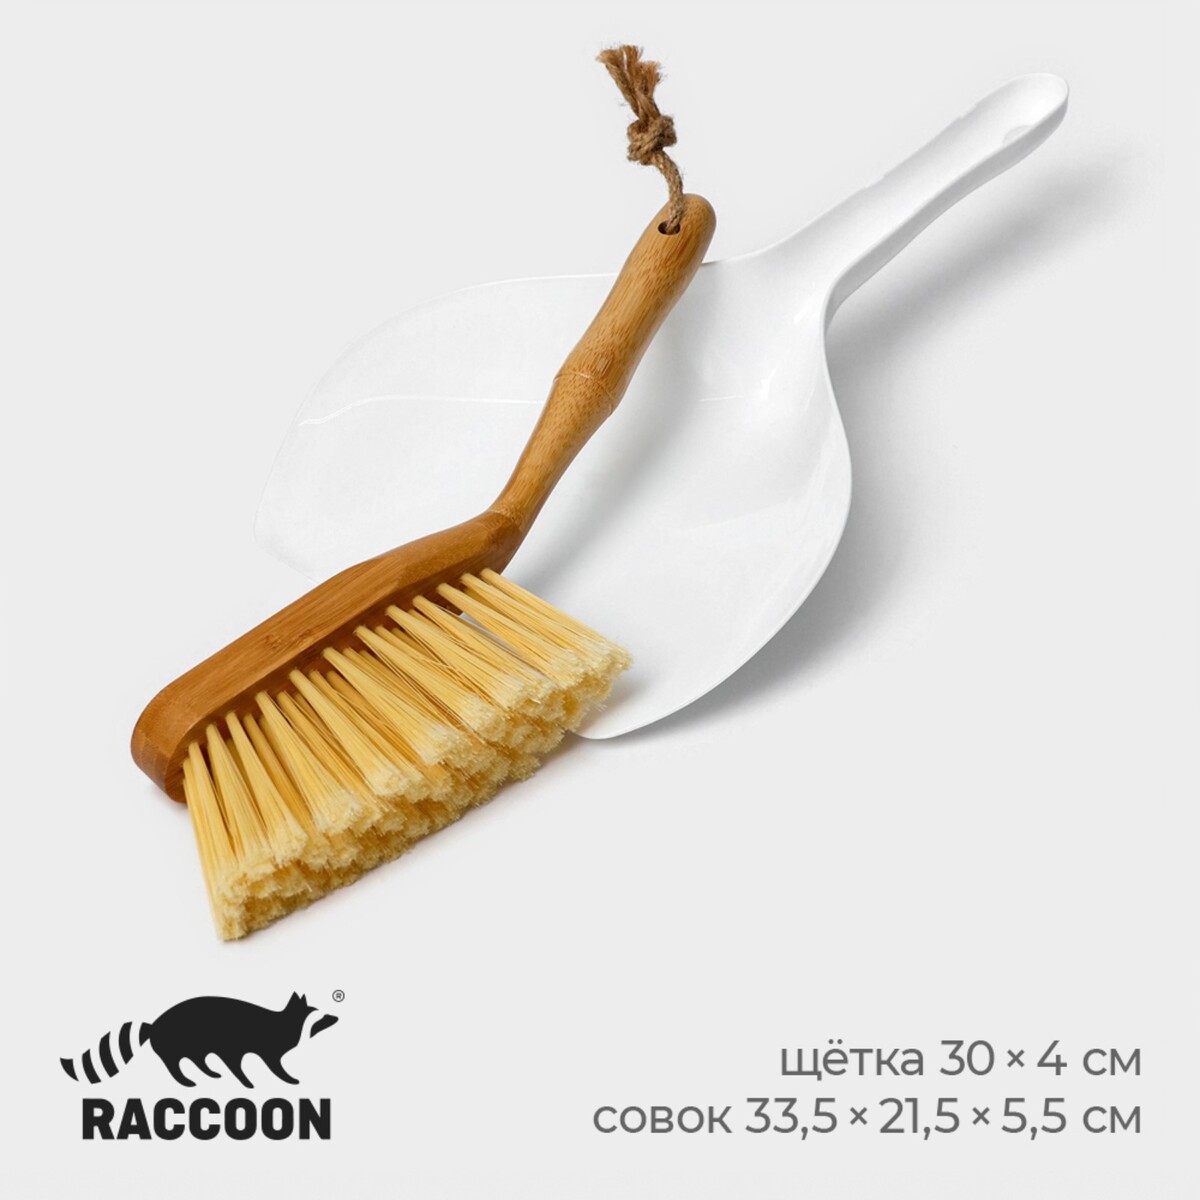 Щетка с совком raccoon meli, бамбуковая ручка, совок 33,5×21,5×5,5 см, щетка 30×4 см, ворс 6 см набор для уборки совок и щетка 16×10 5×4 см 16×4×1 6 см 30 пучков натуральный волос